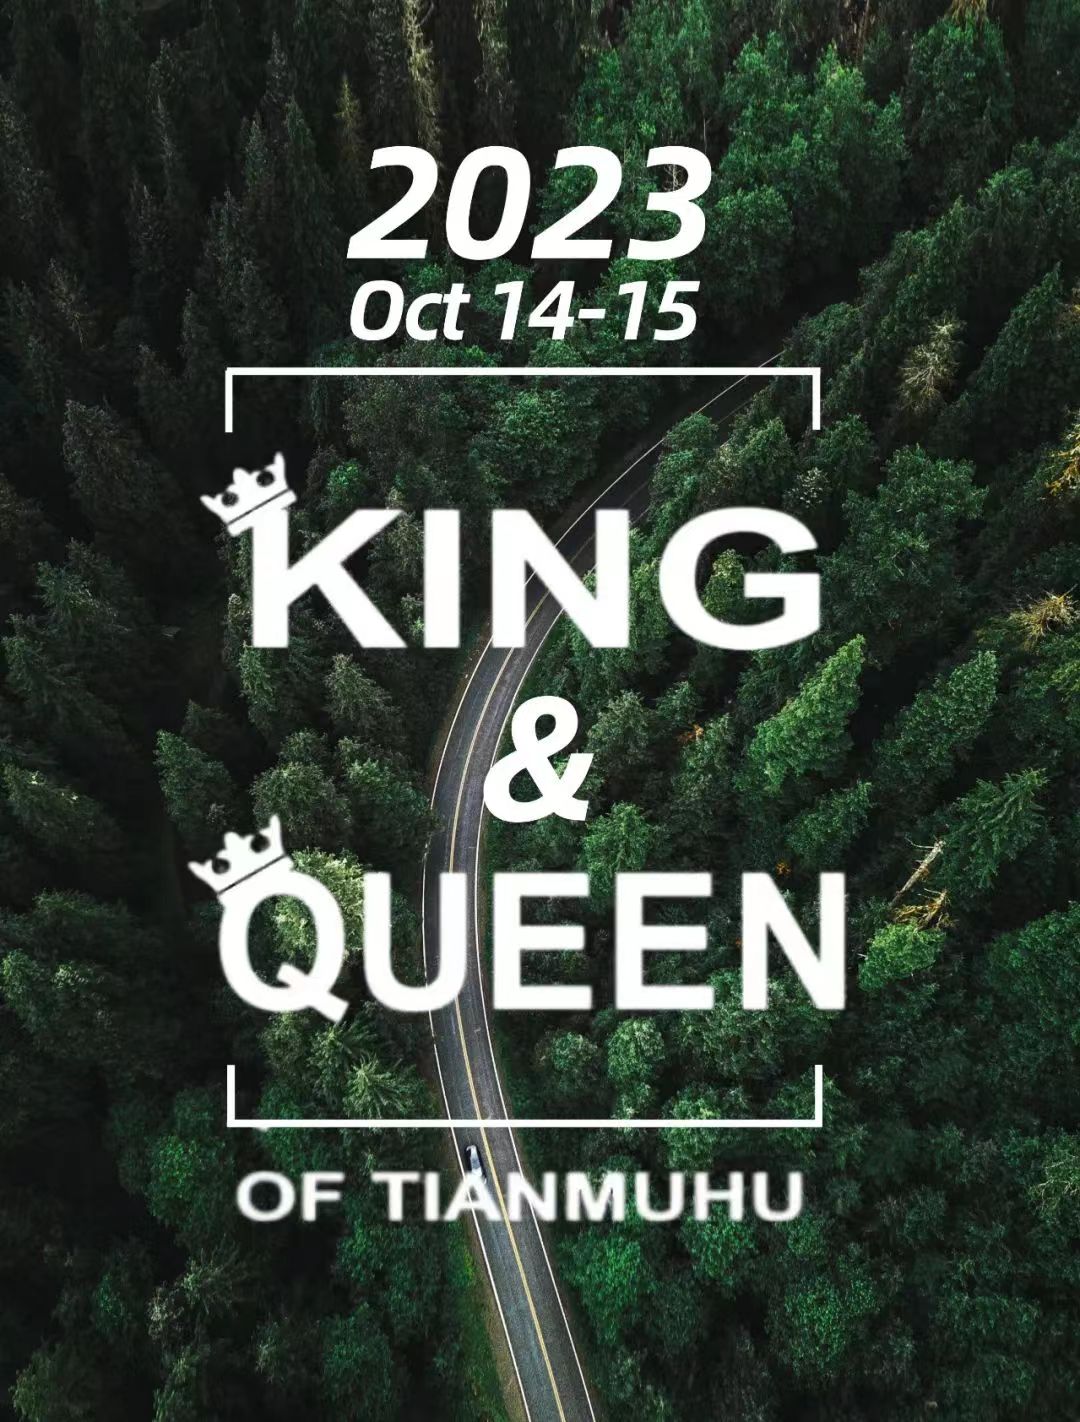 King & Queen of TIANMUHU